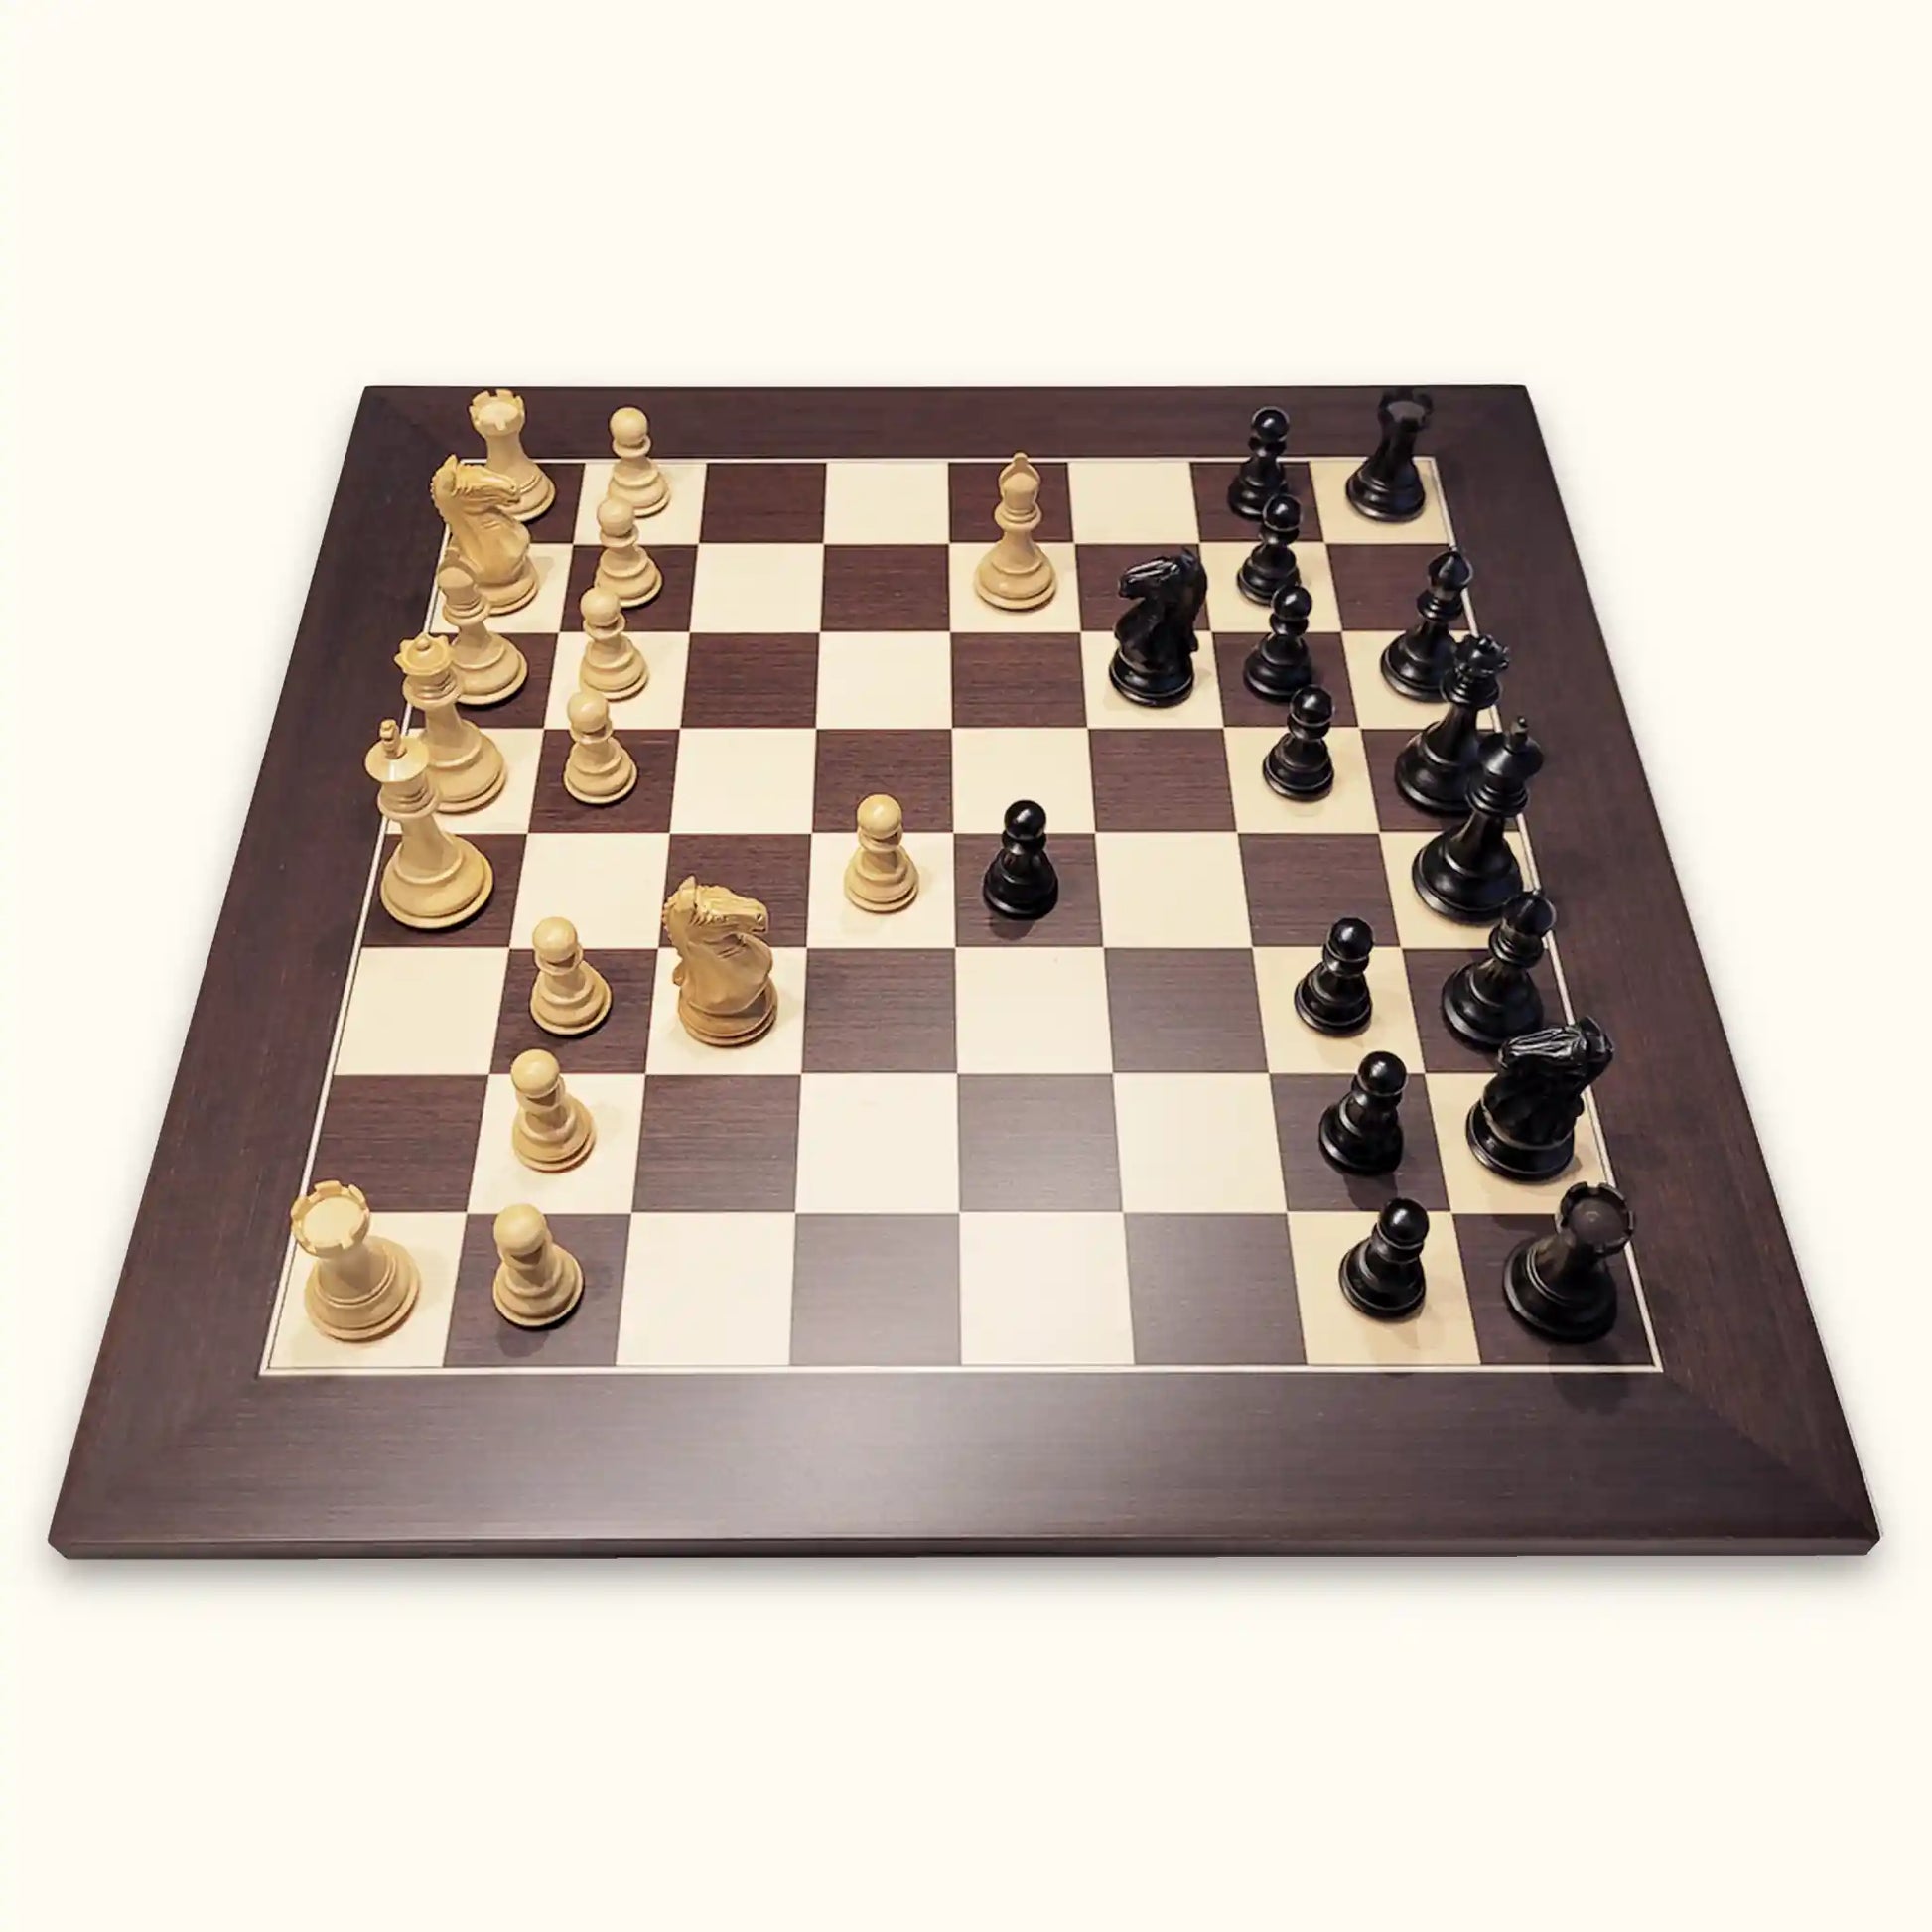 Initiez-vous gratuitement au jeu d'échecs au Chess Hotel, le dimanche 6  décembre 2015 de 15h à 17h ! En partenariat avec Chess & Strate…